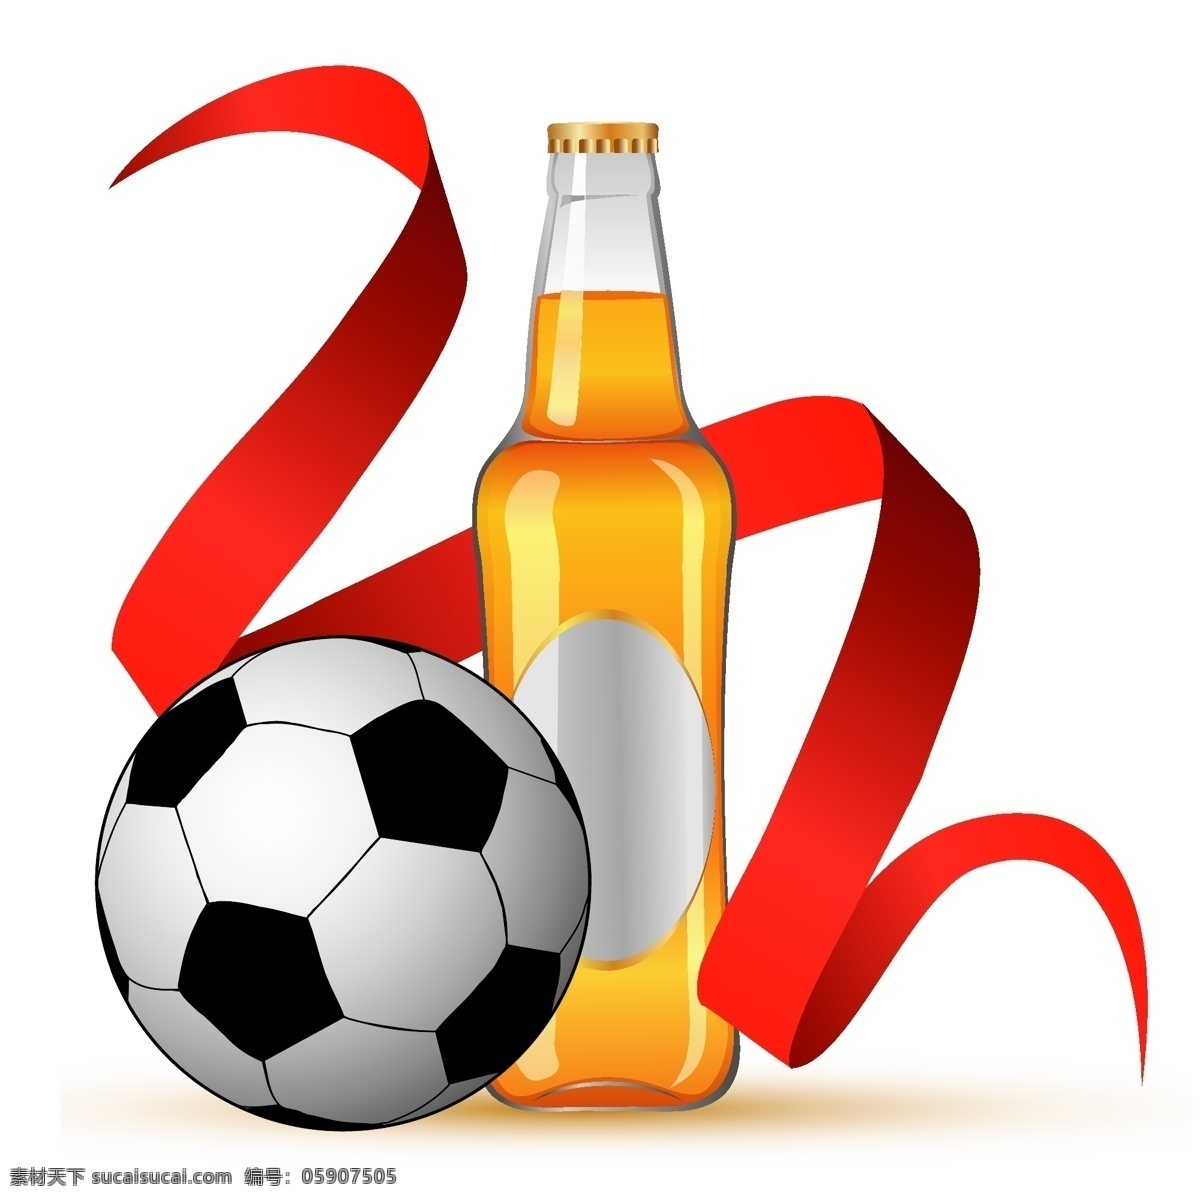 啤酒 足球图片 手绘 足球 矢量 模板下载 啤酒和足球 矢量图 日常生活